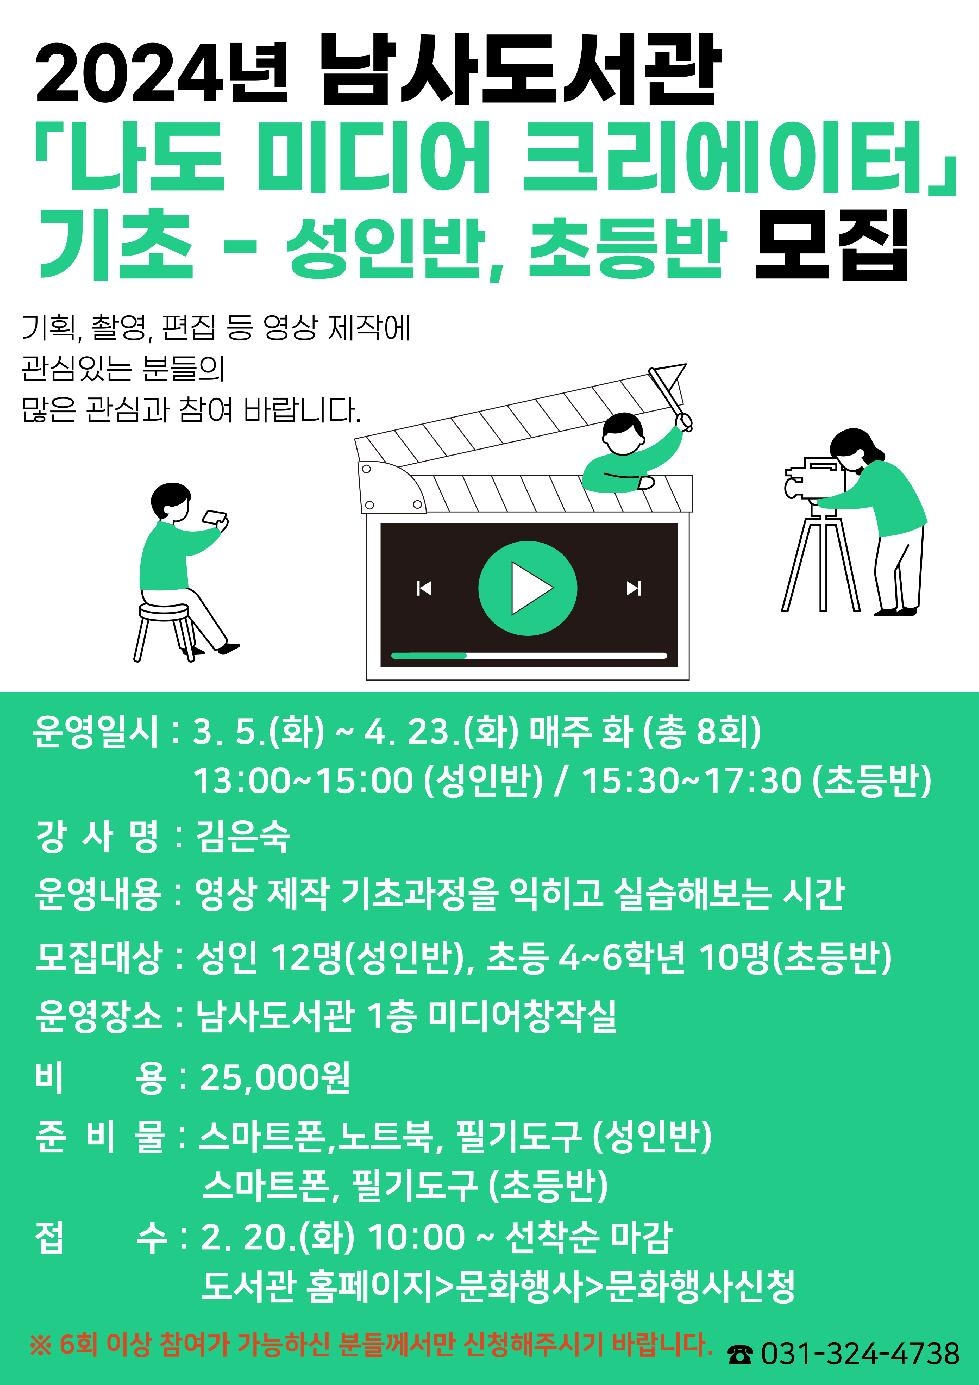 용인시 남사·기흥도서관, 1인 미디어 제작 강의